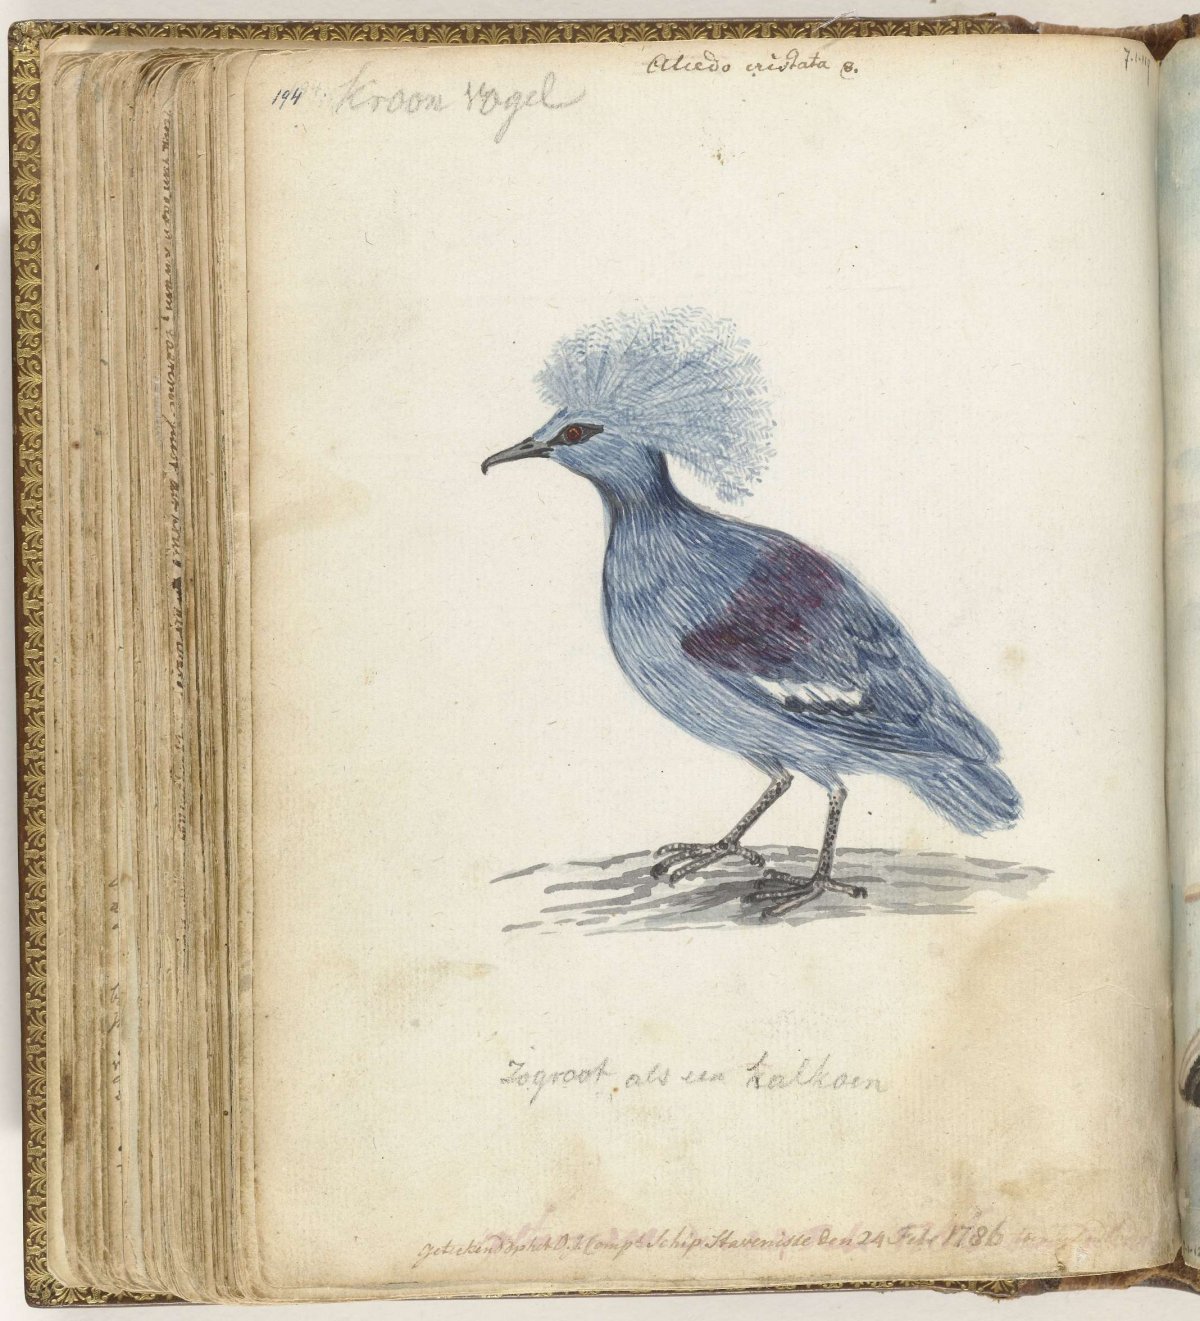 Crowned Pigeon, Jan Brandes, 1786